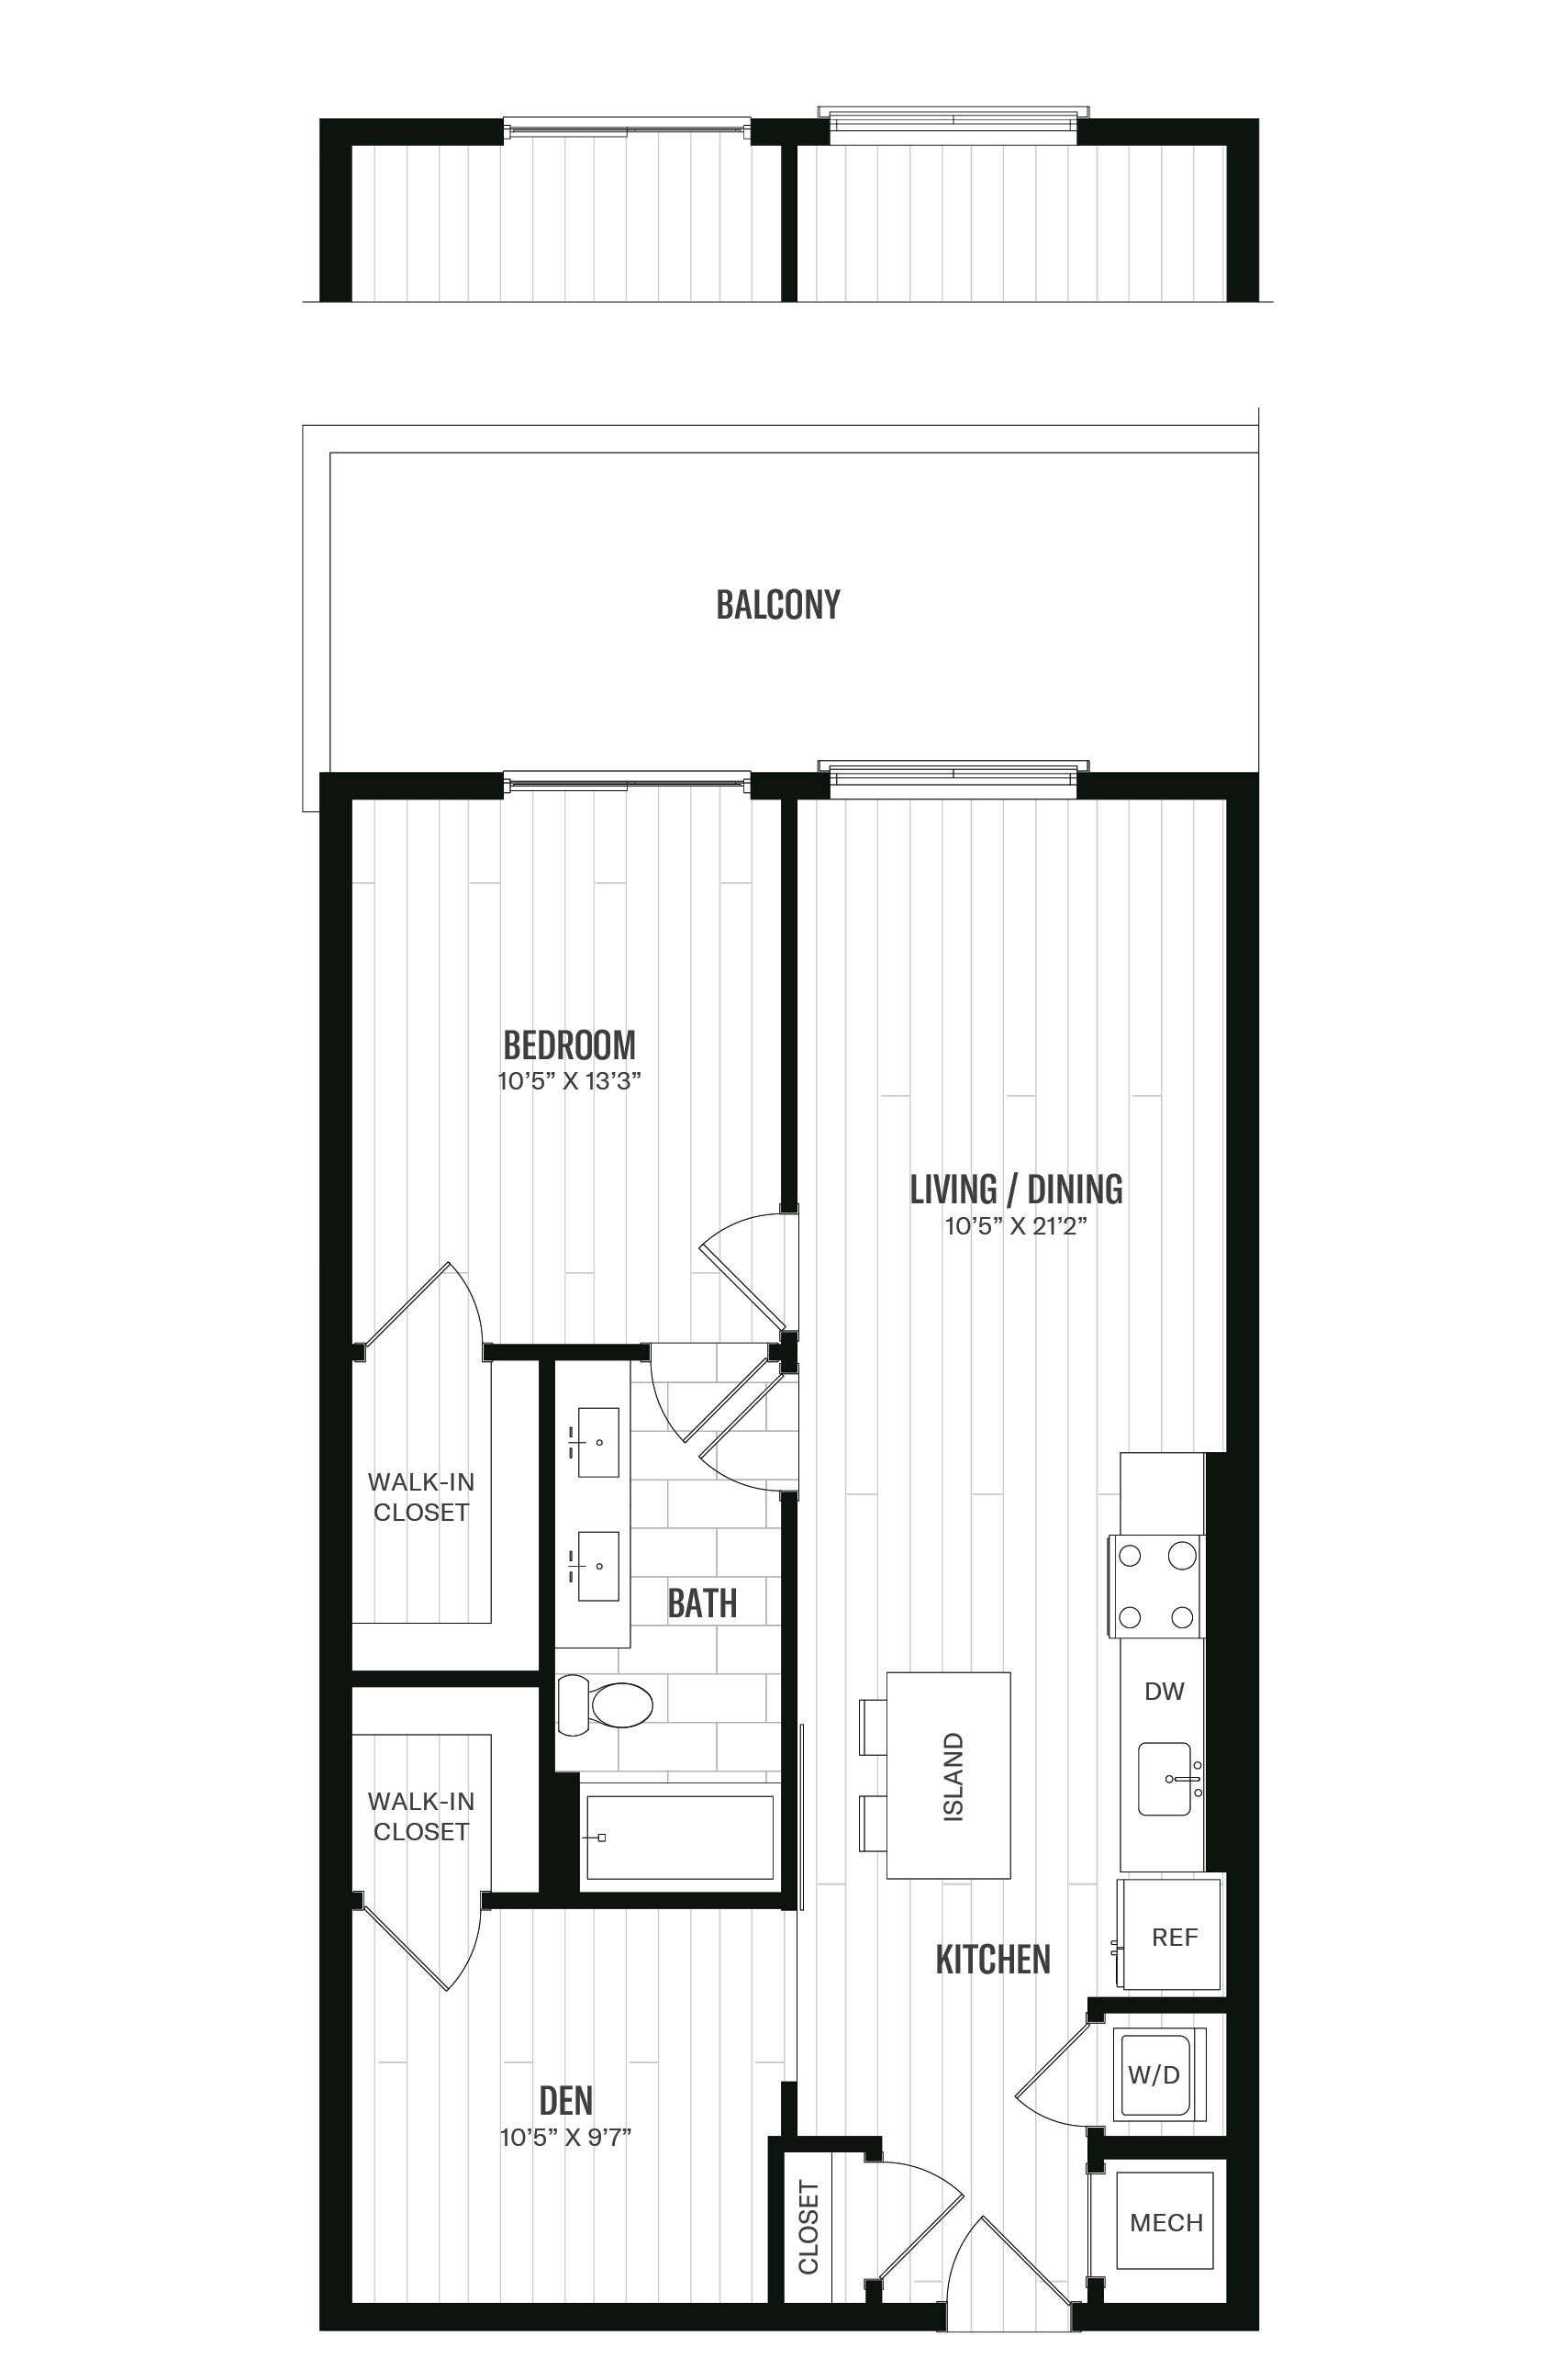 Floorplan image of unit 429